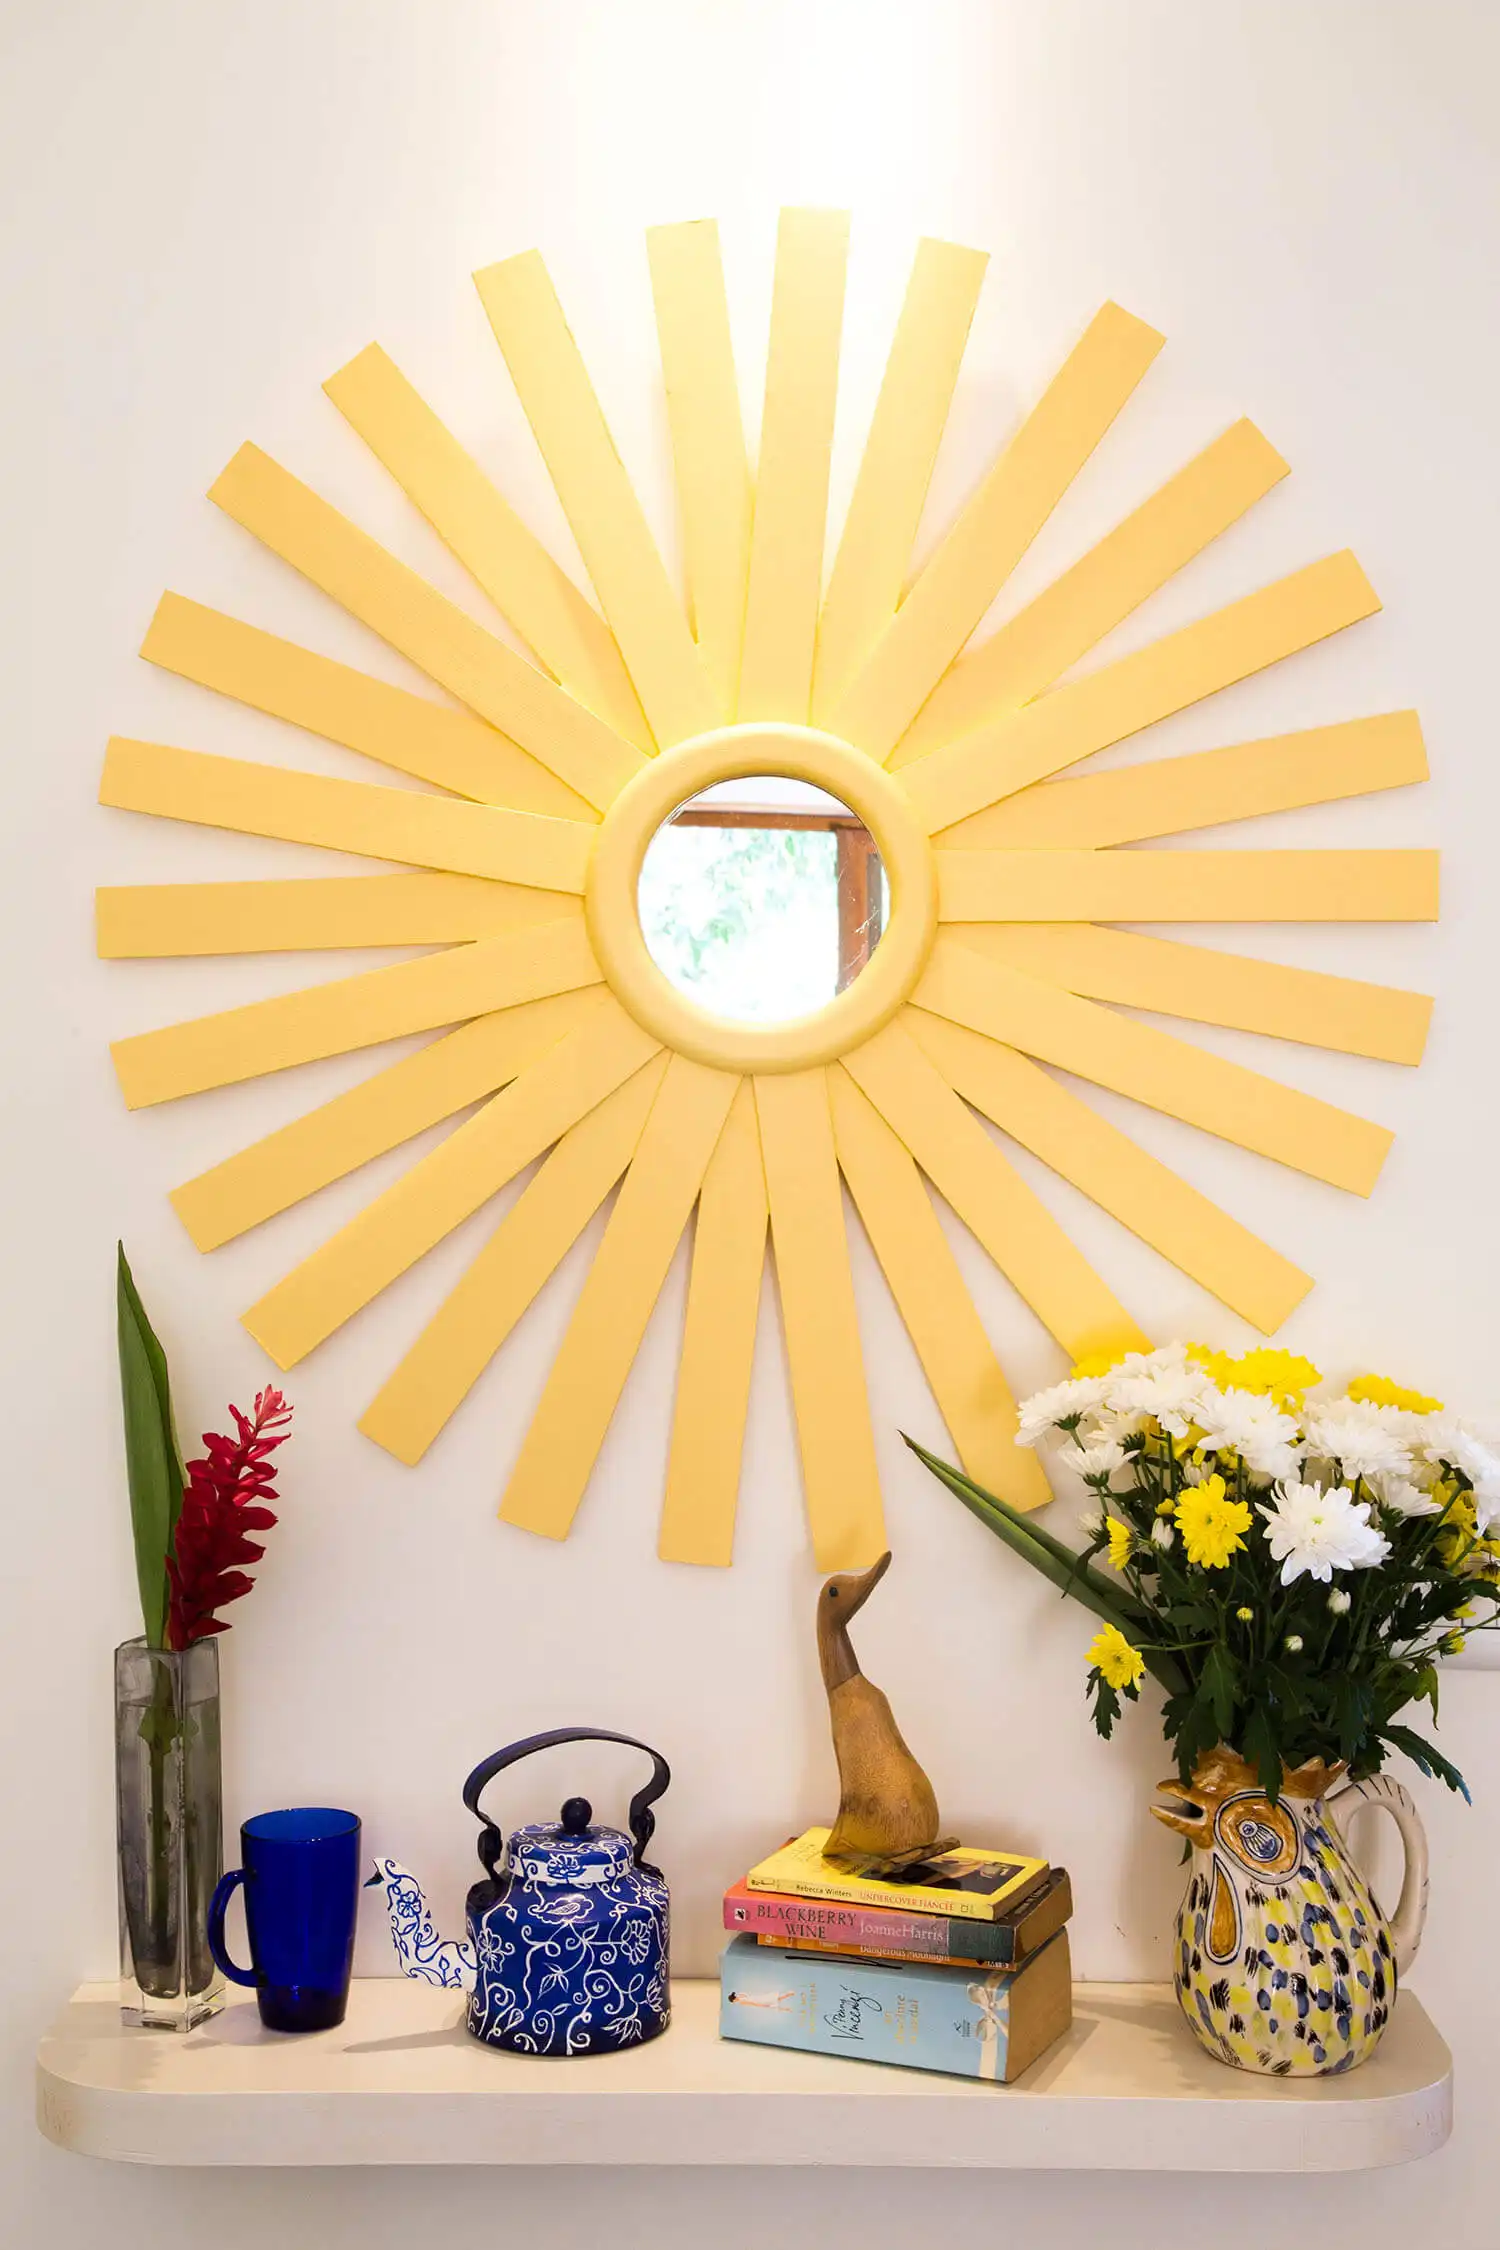 Sunburst mirror from waste wood